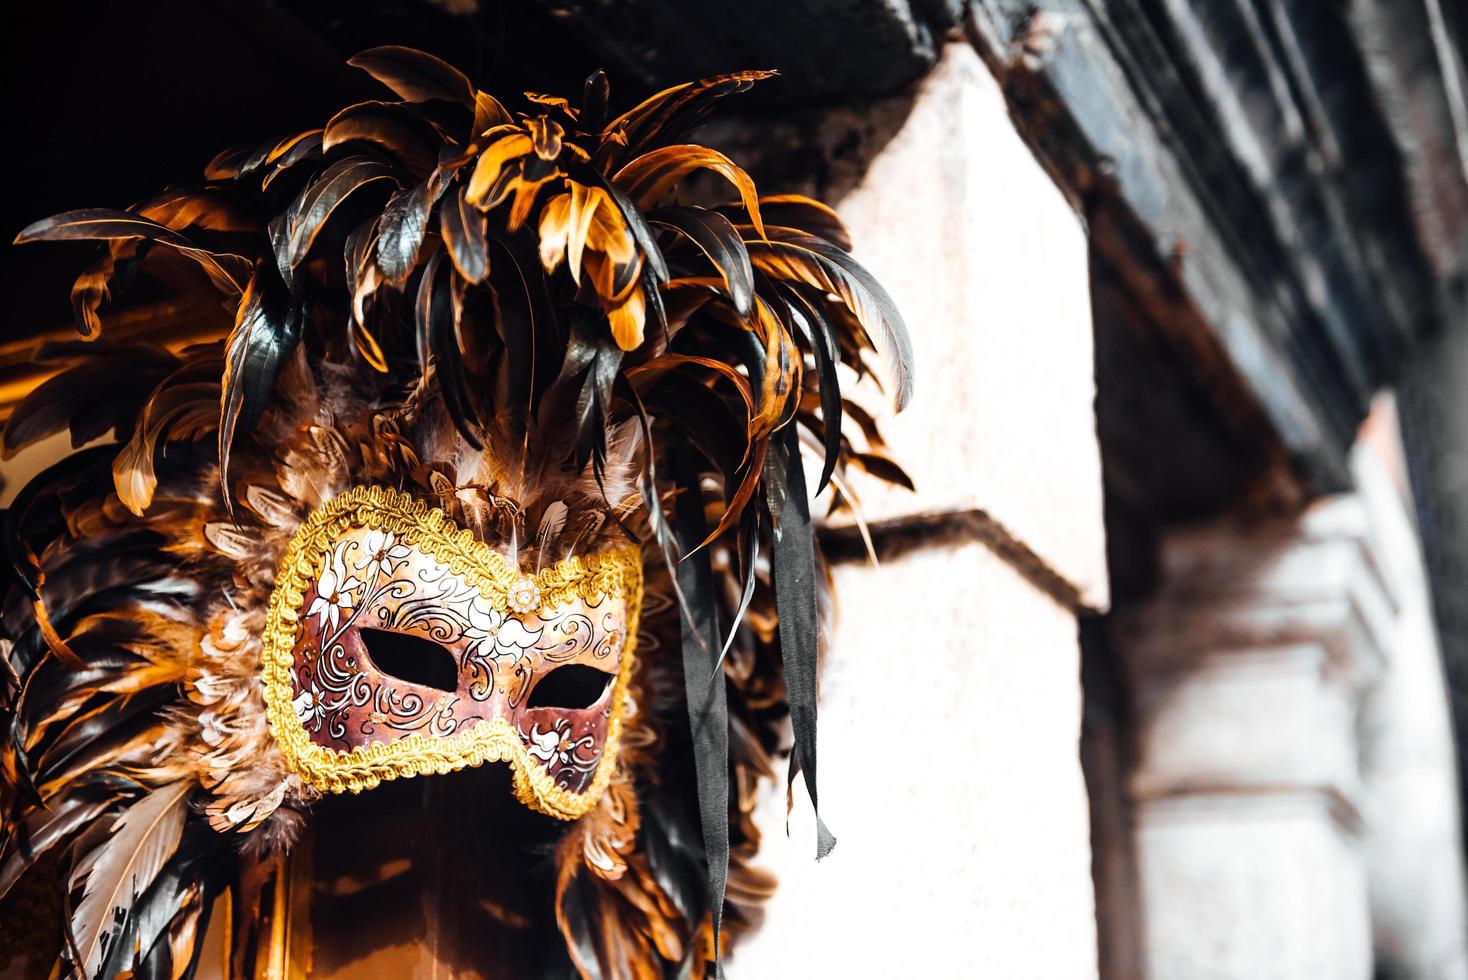 Venise, Italie 2017- vitrine vénitienne avec des masques photo